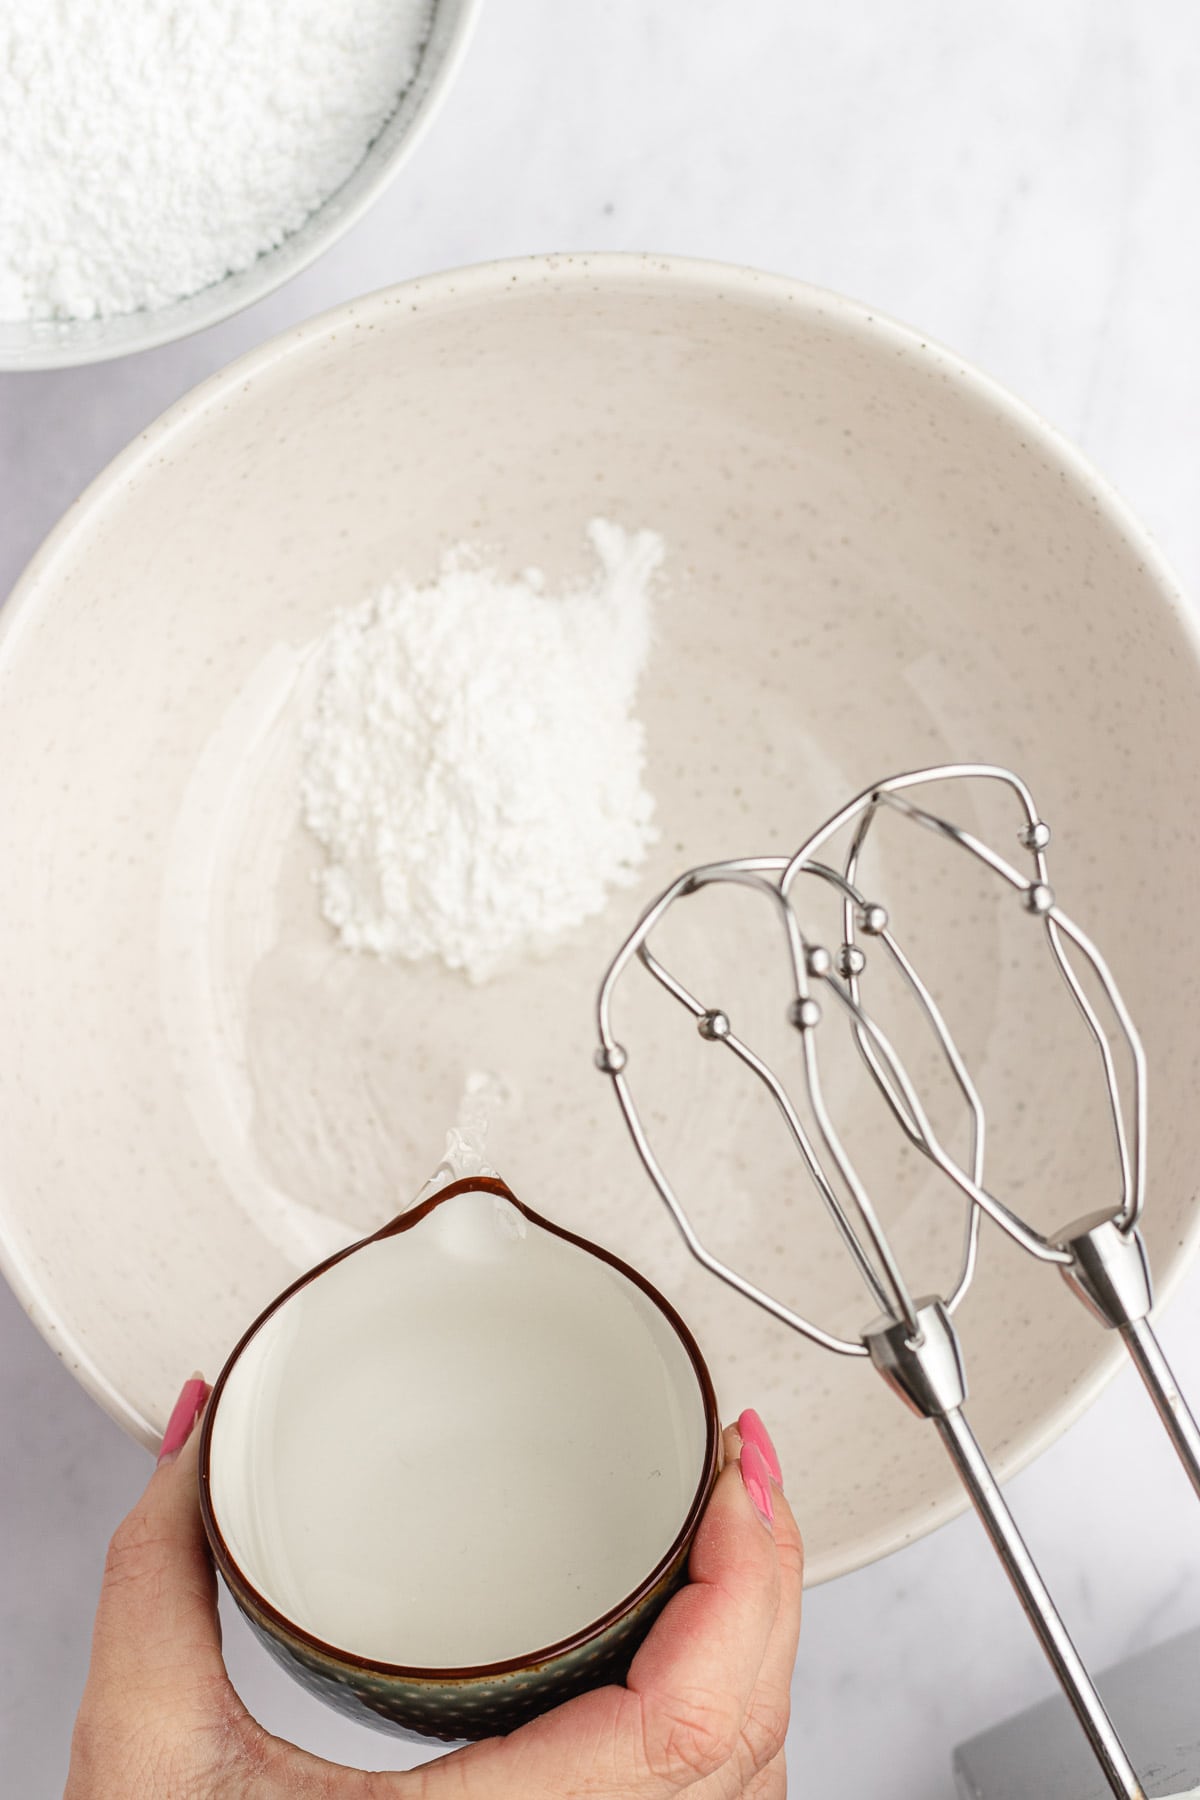 Royal Icing meringue powder in mixing bowl